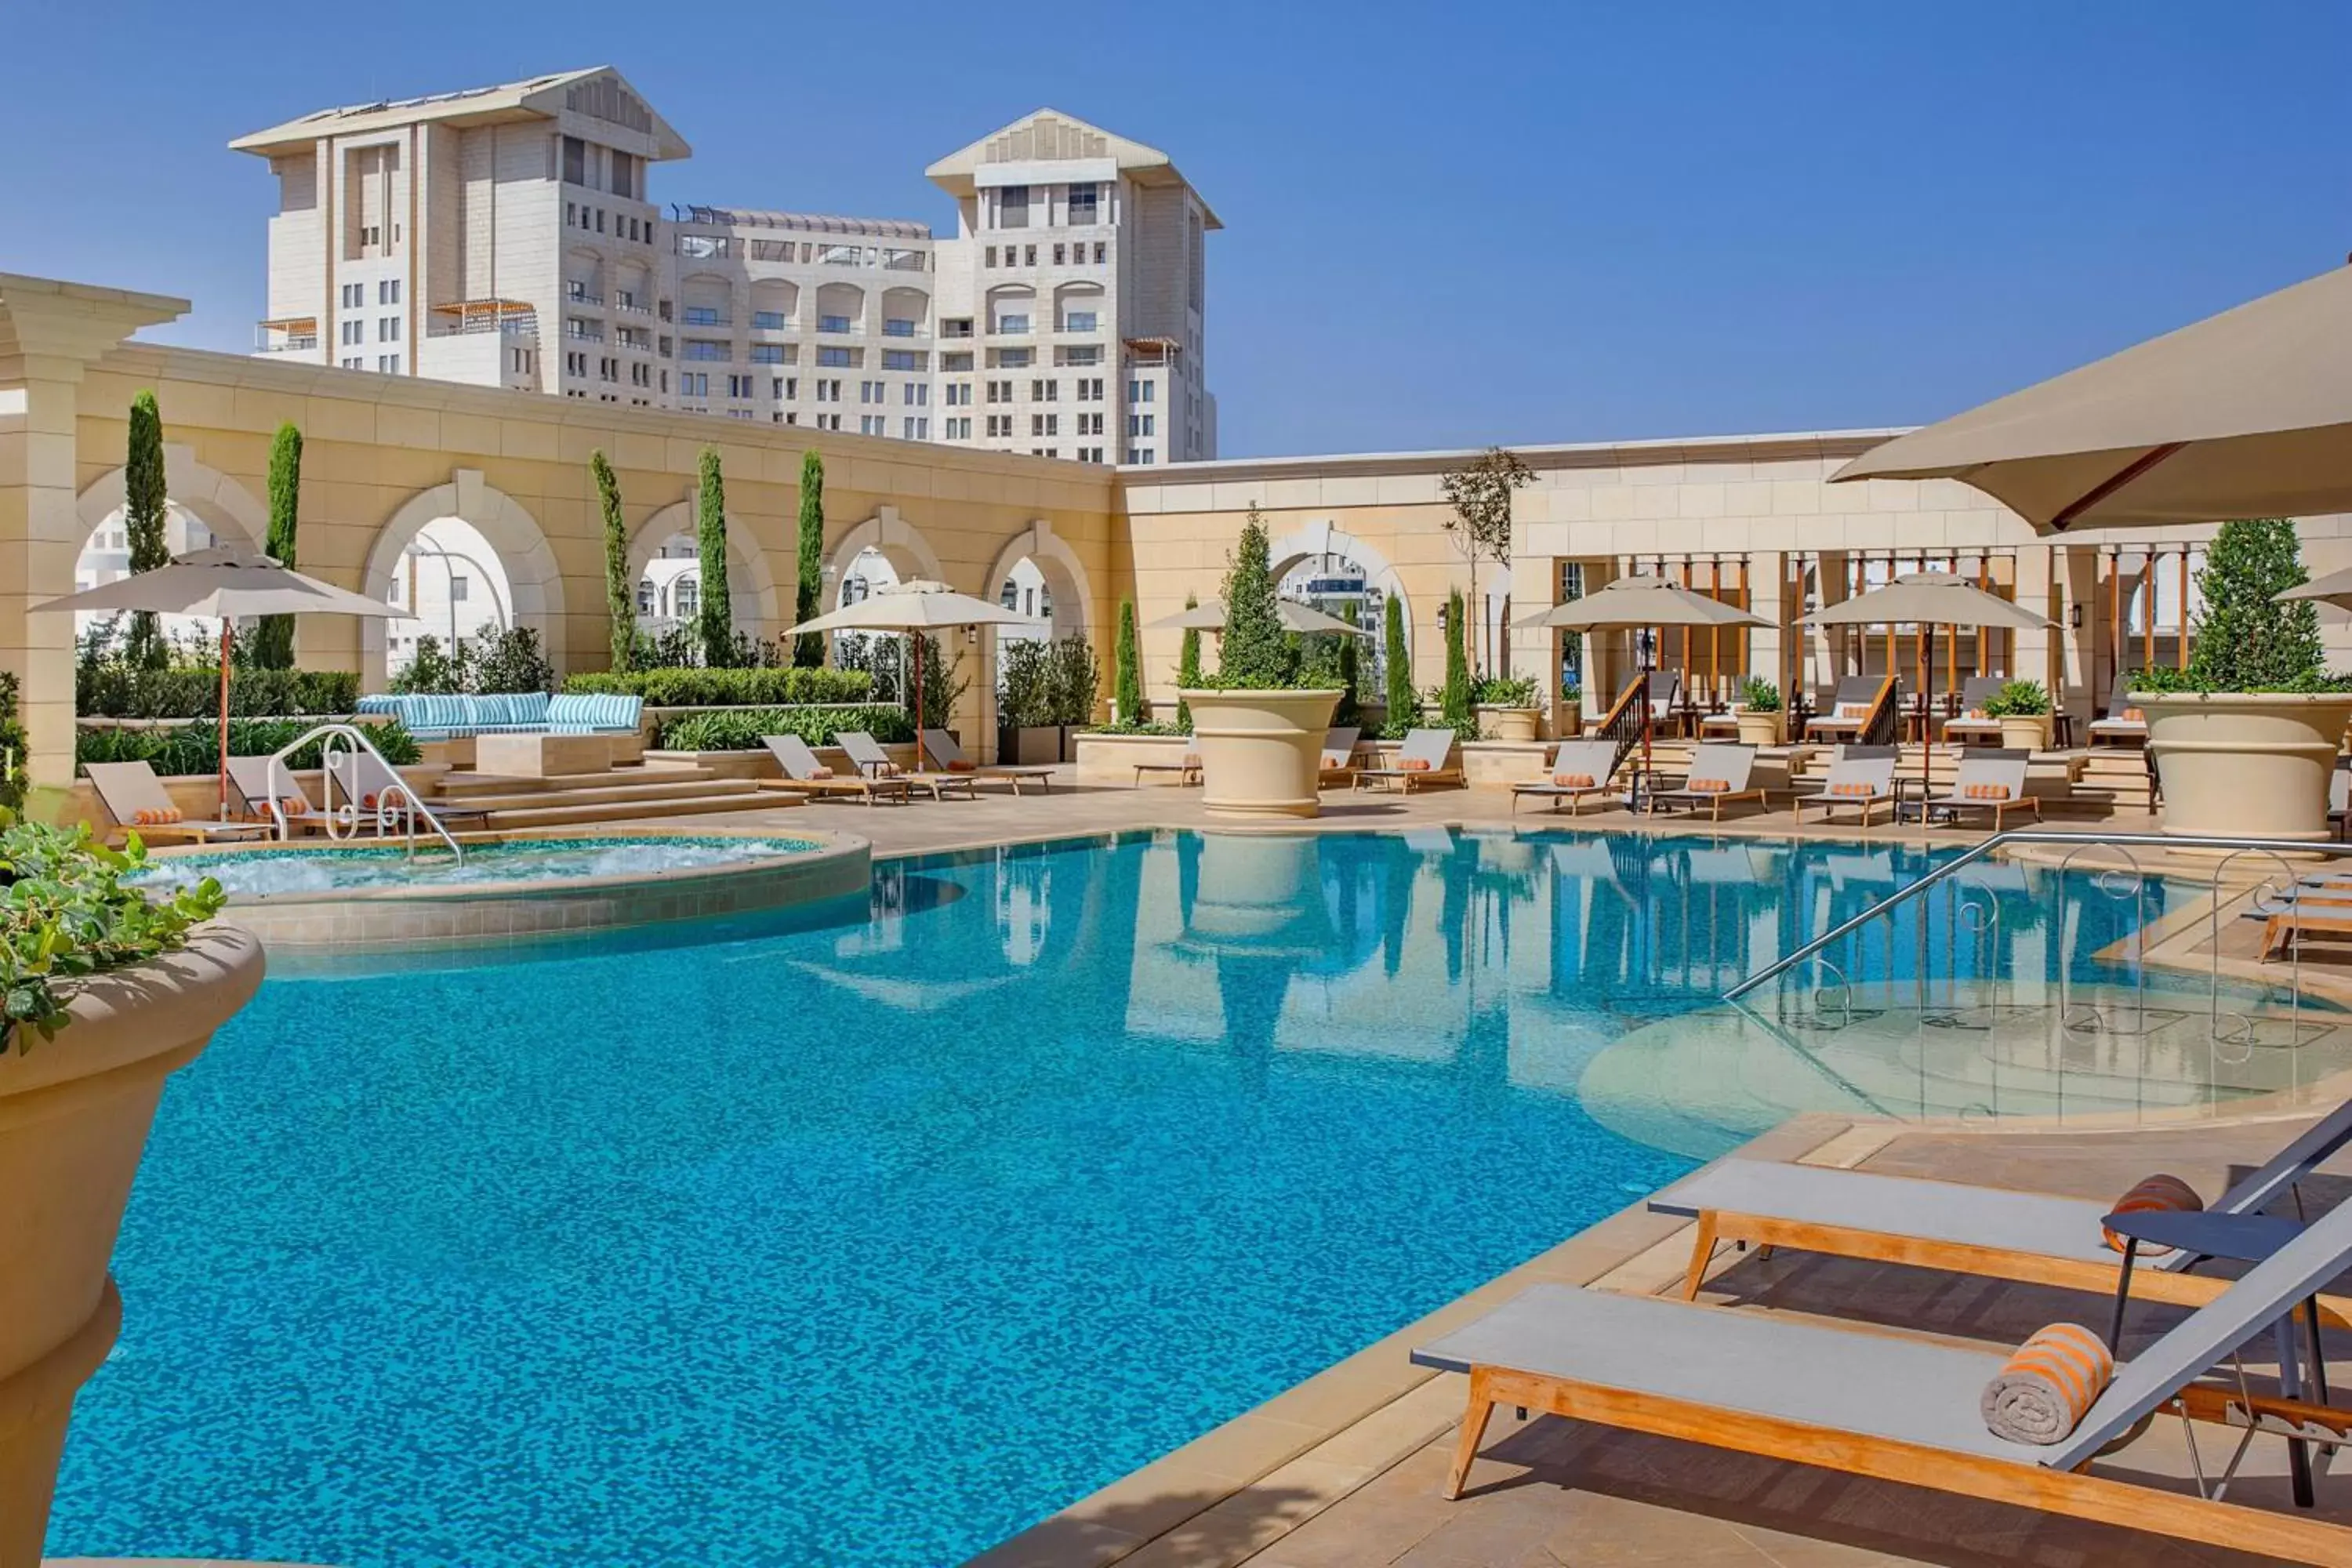 Swimming Pool in The Ritz-Carlton, Amman